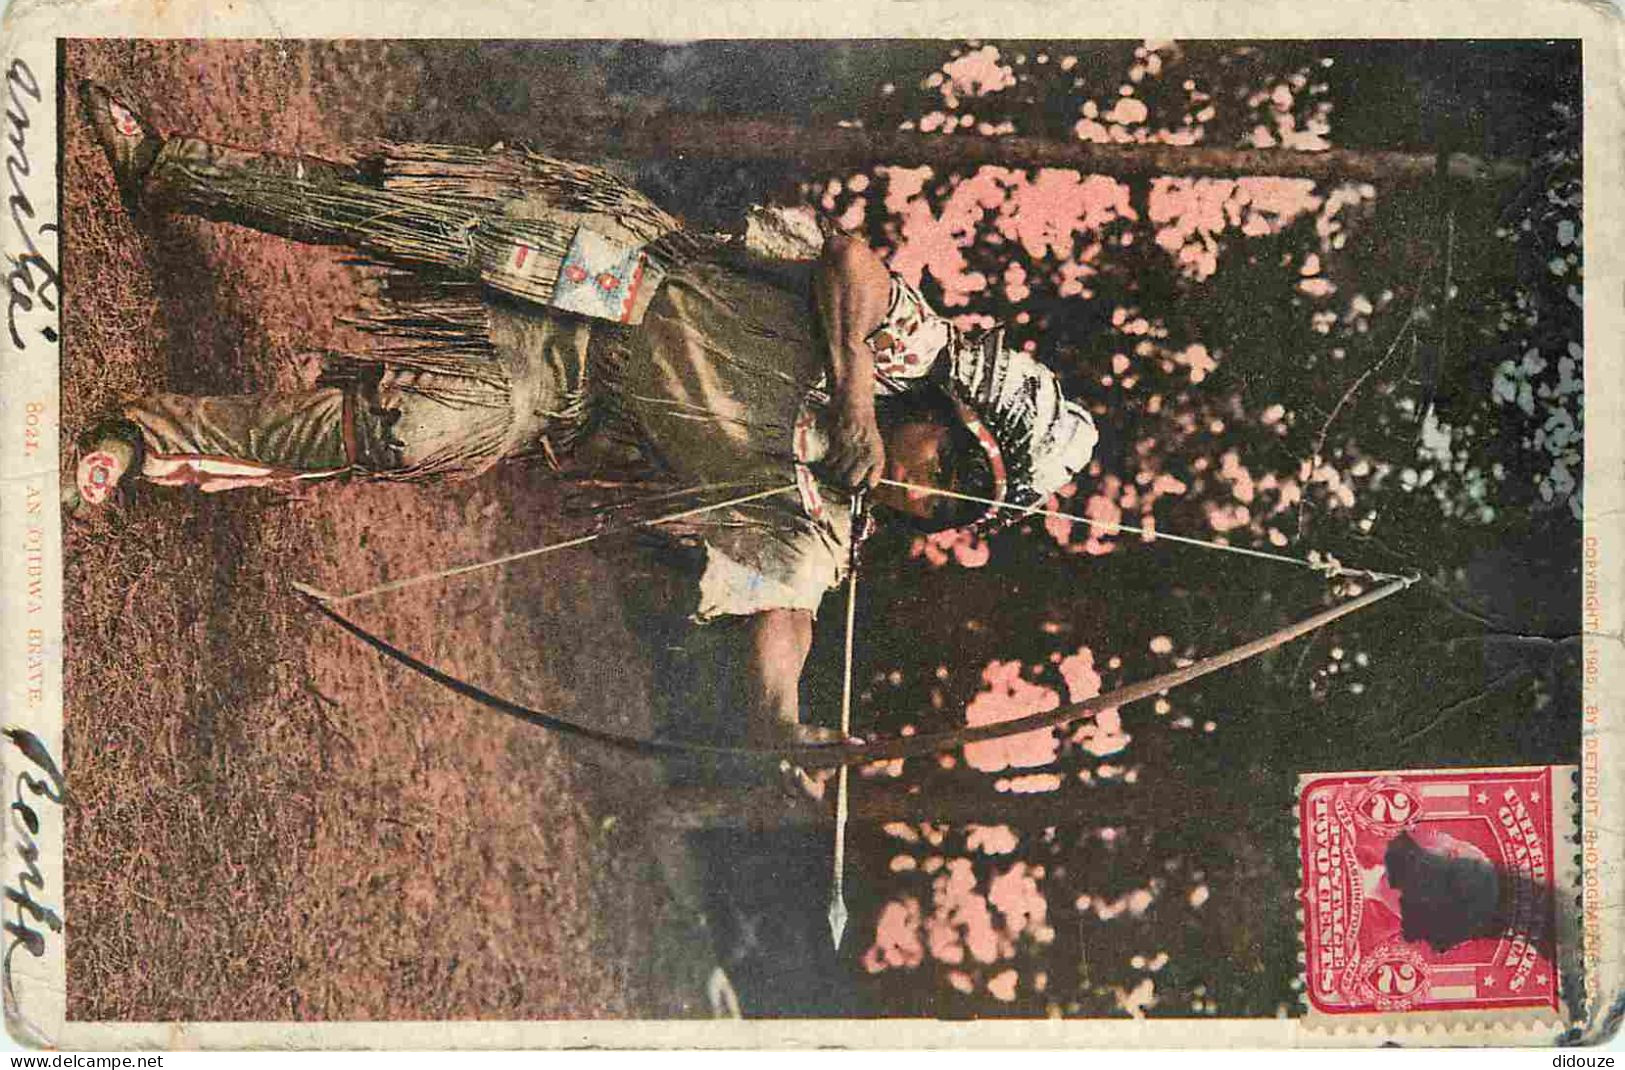 Etats Unis - Indiens - An Ojibwa Brave - Animée - Arc - Précurseur - CPA - Oblitération Ronde De 1907 - Etat Légères Fro - Indios De América Del Norte